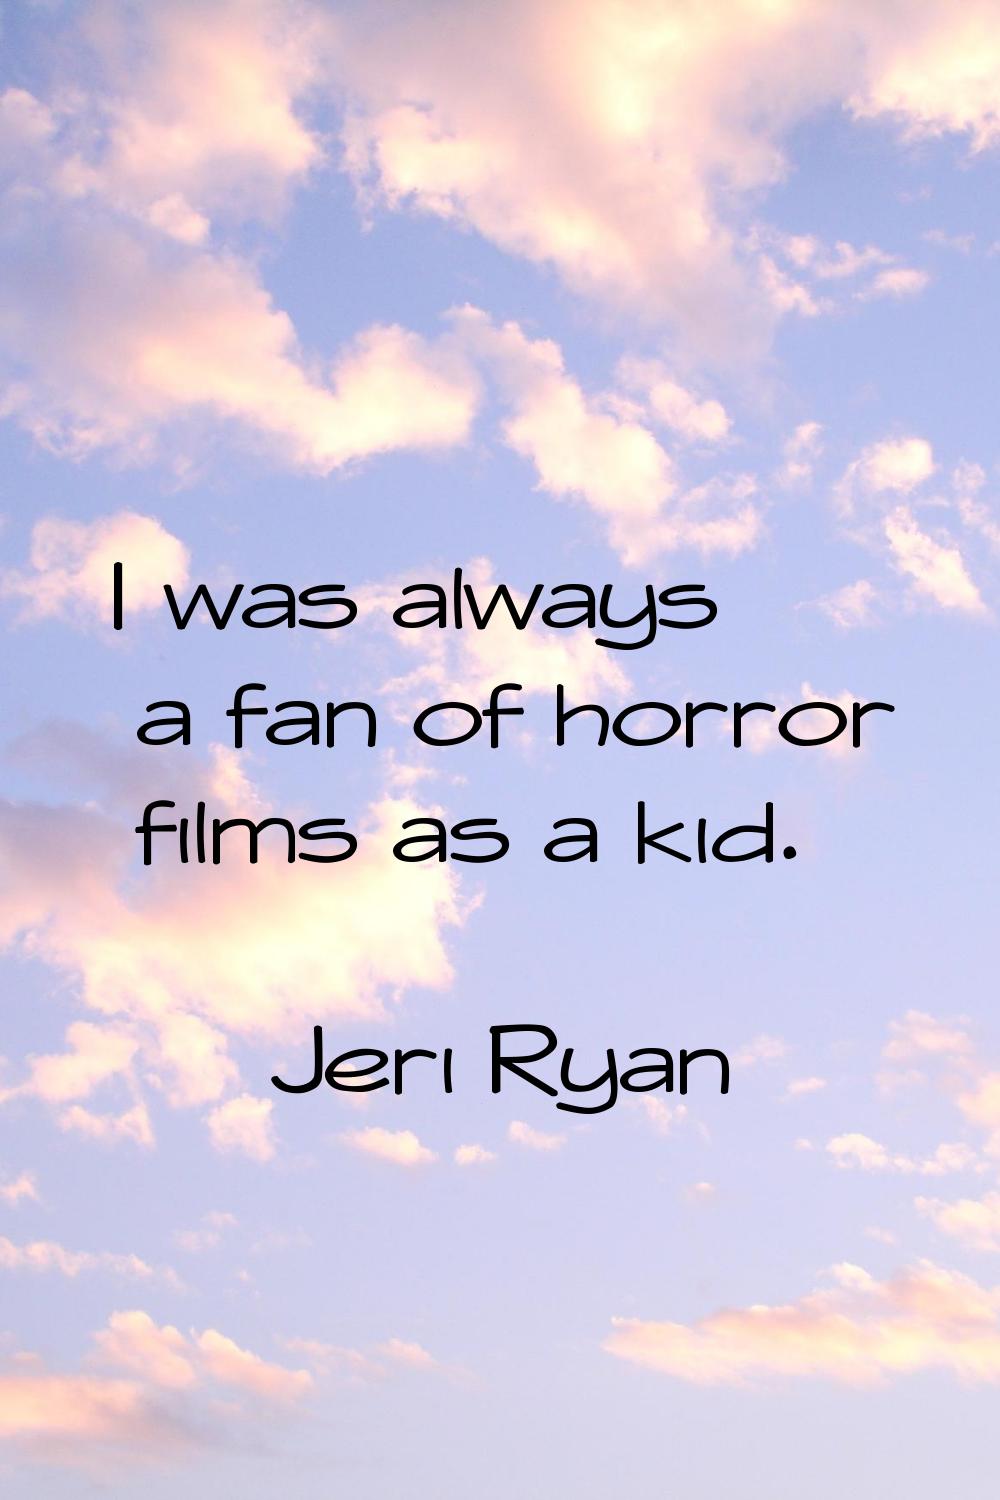 I was always a fan of horror films as a kid.